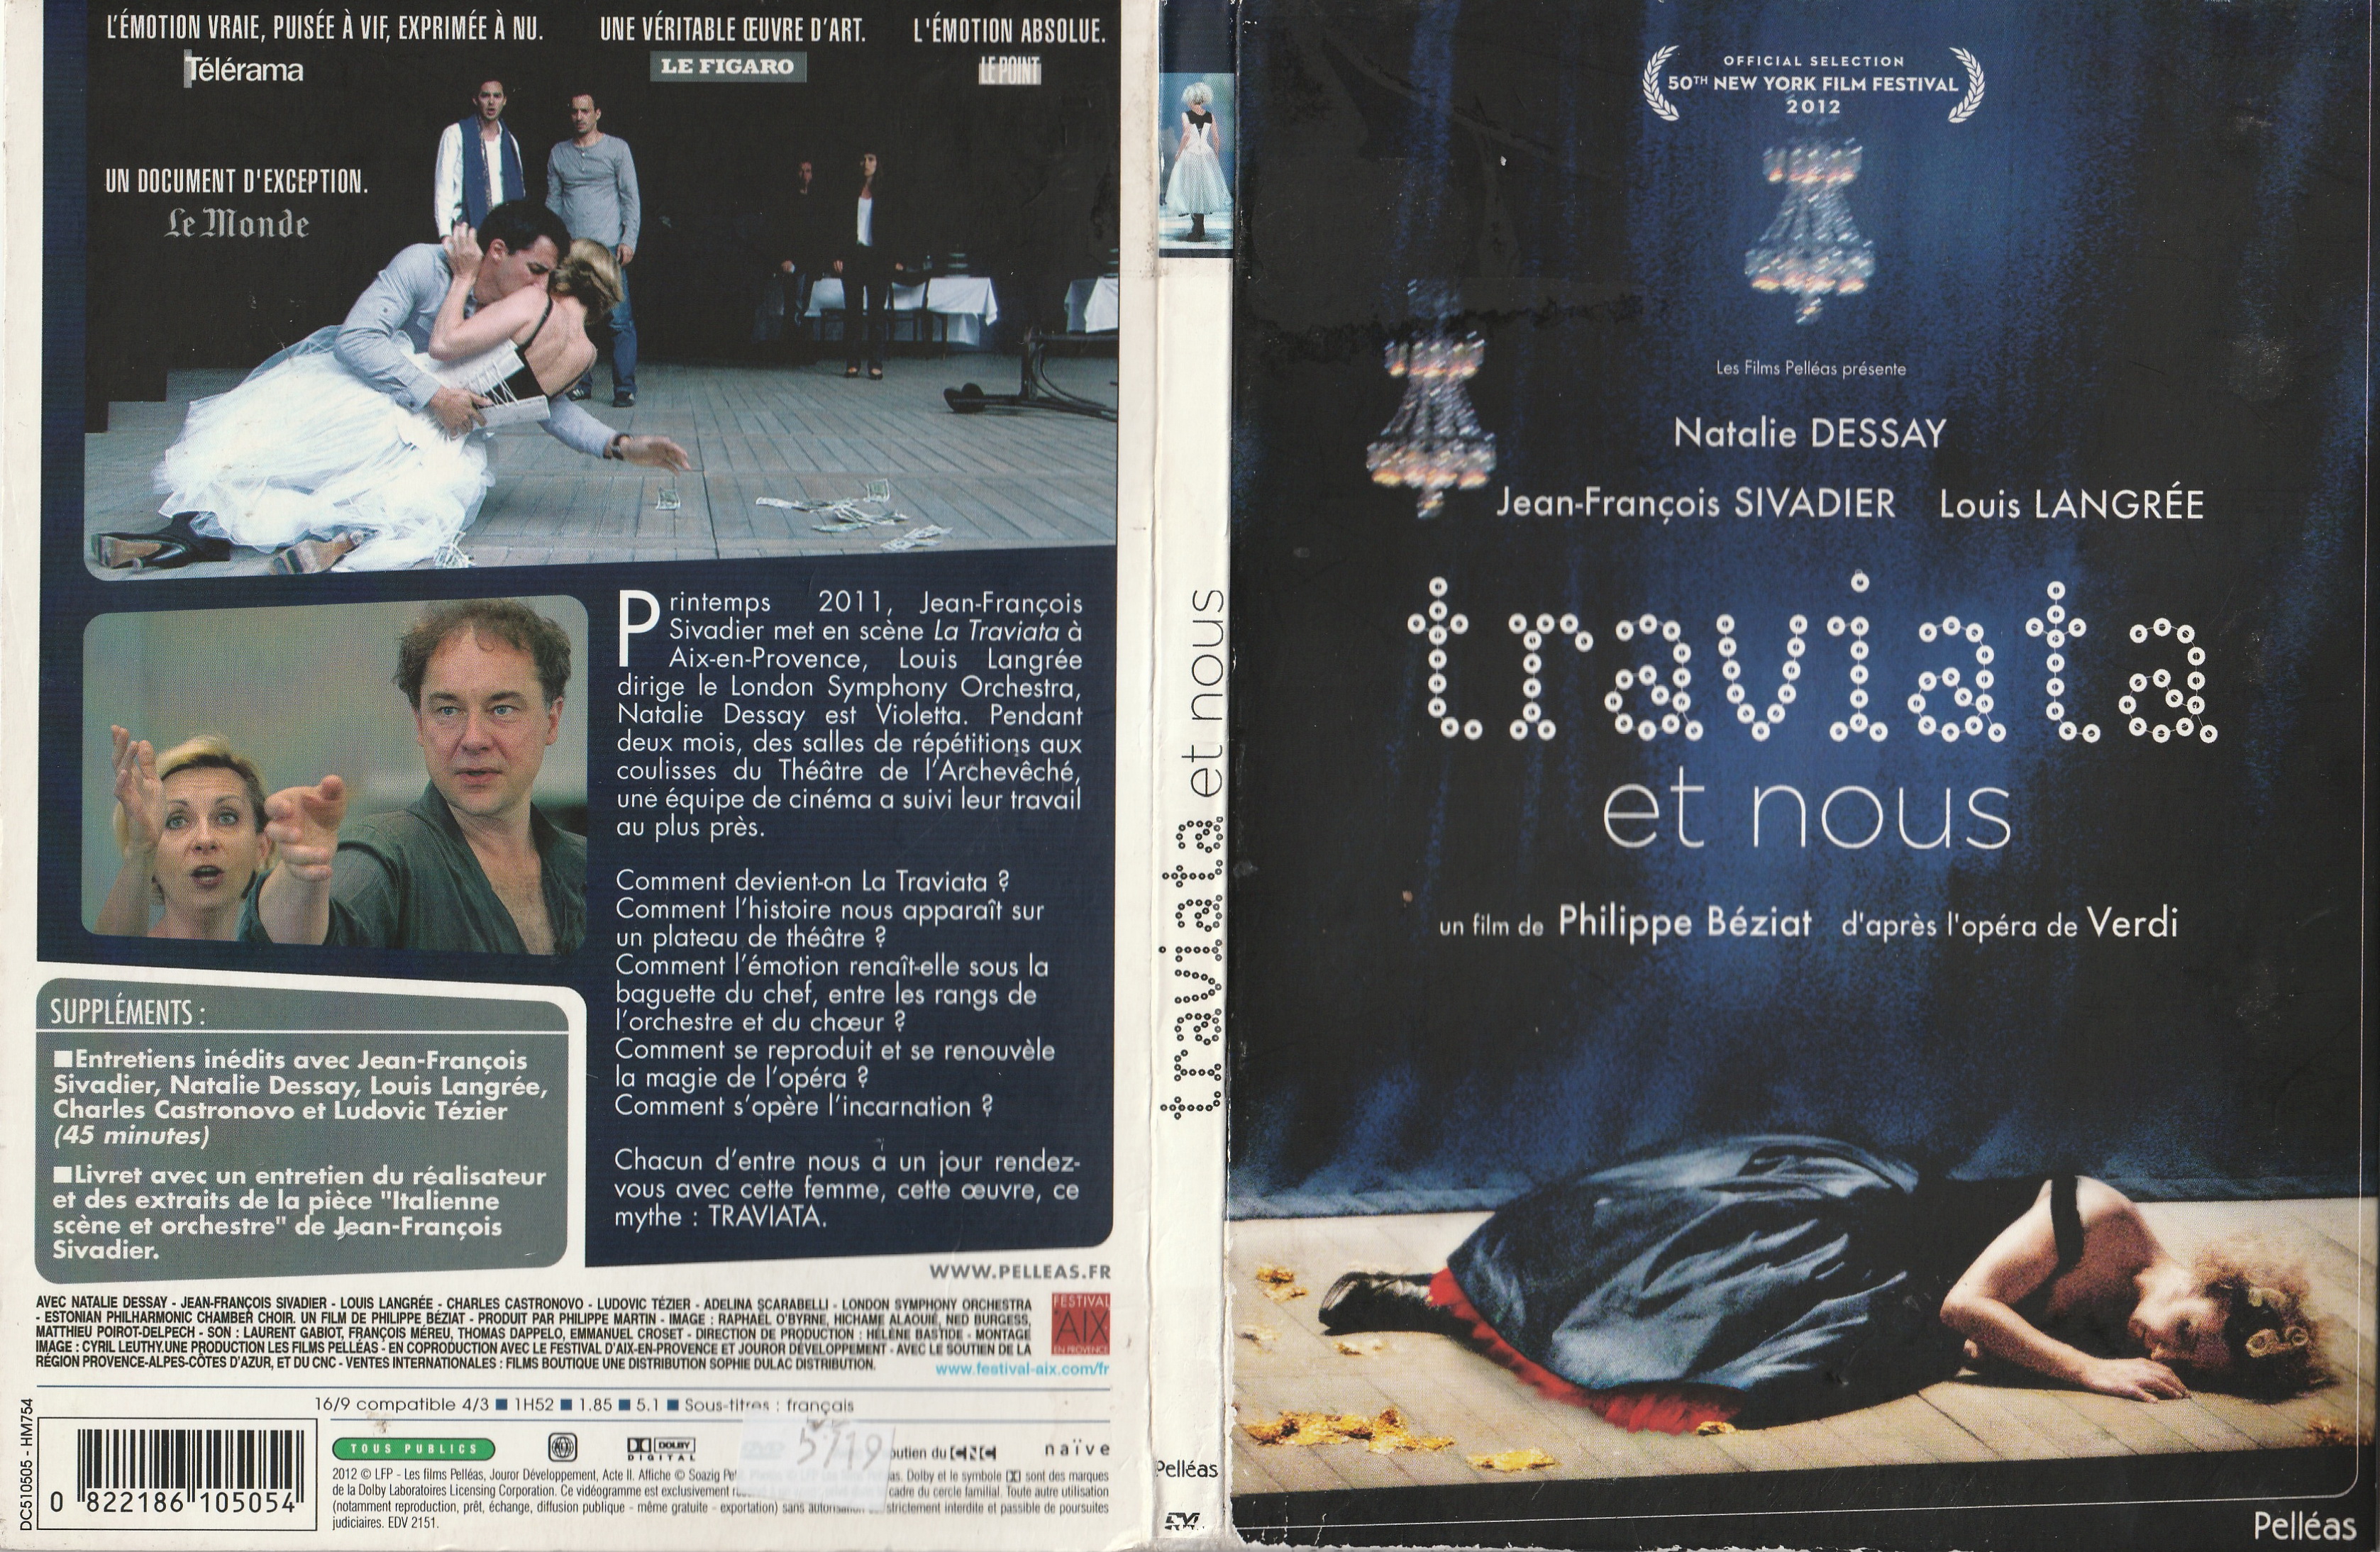 Jaquette DVD Traviata et nous